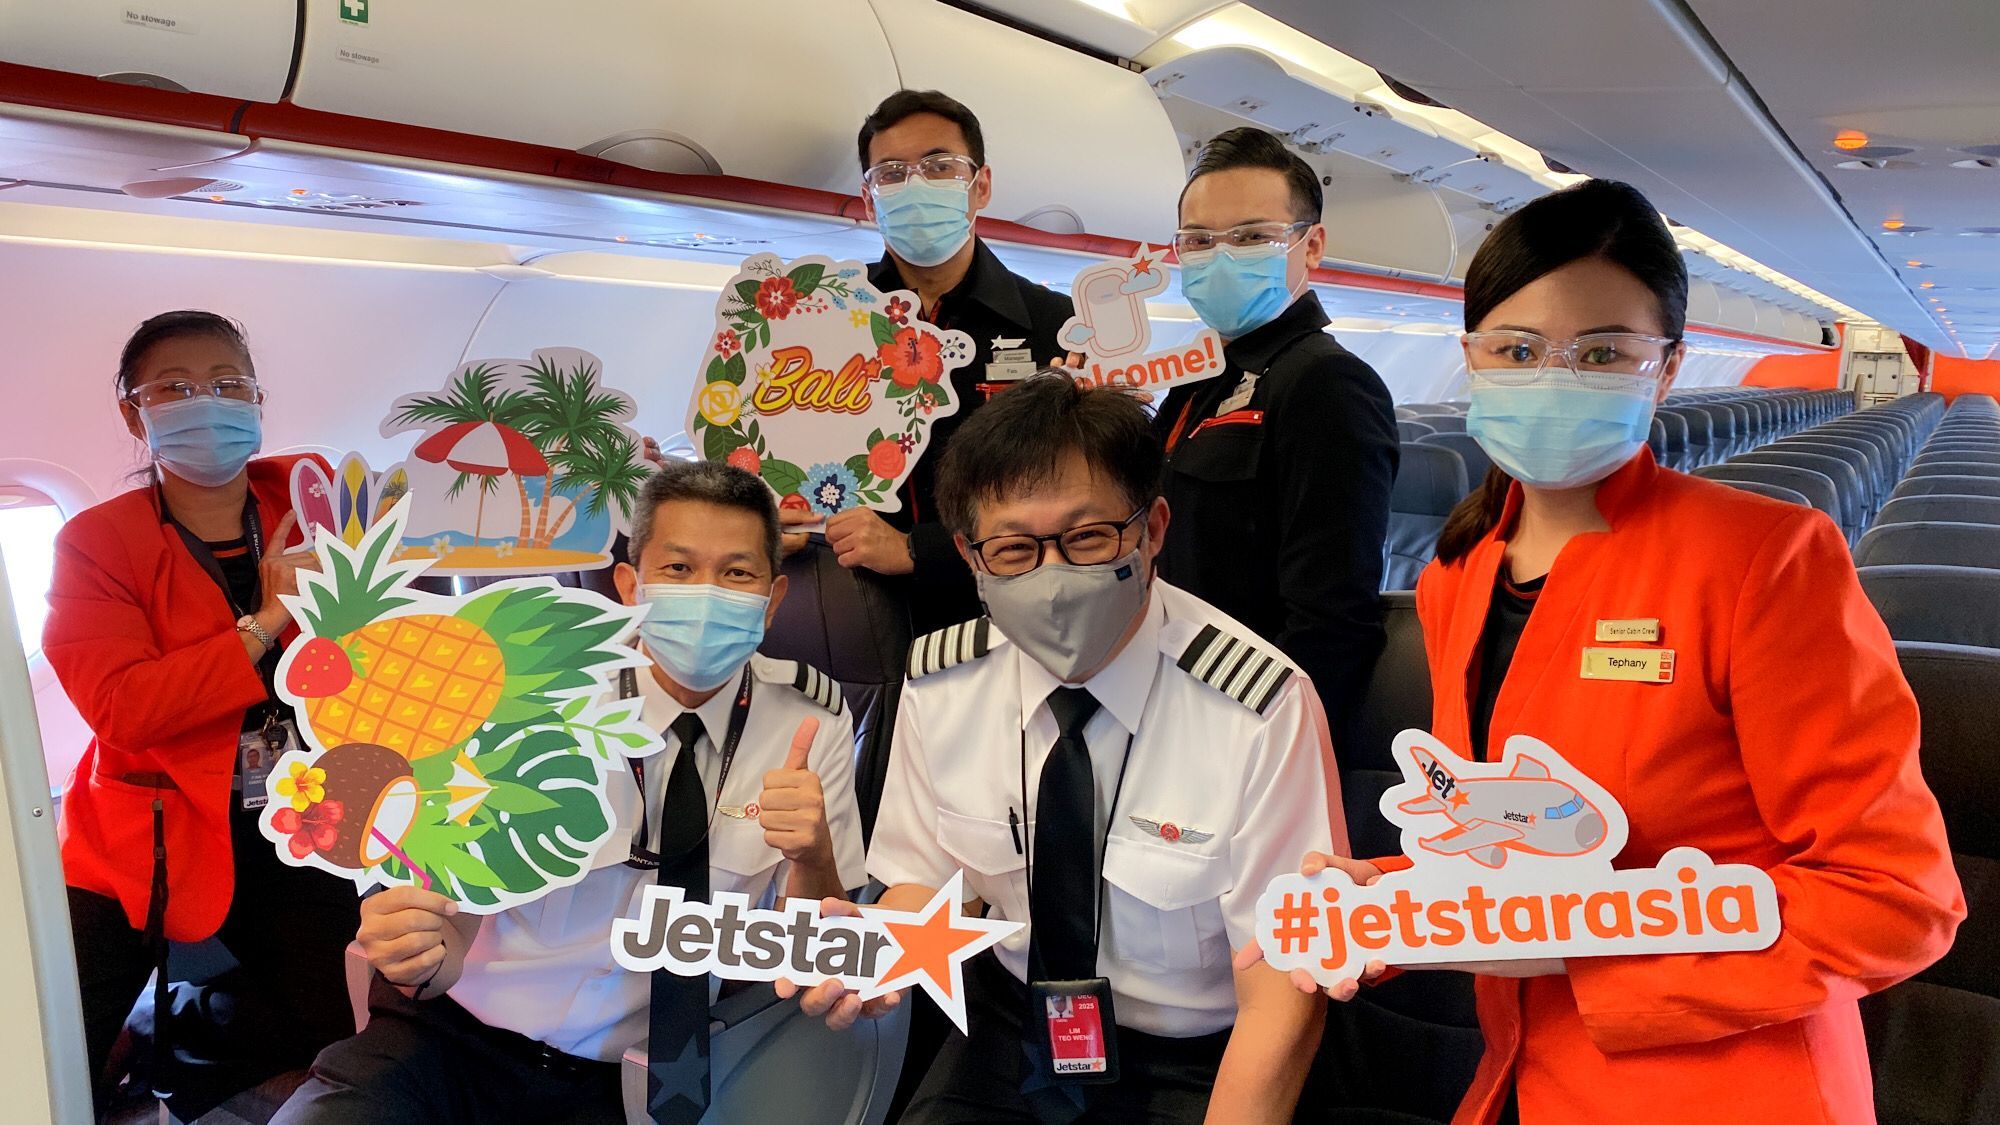 Jetstar crew preparing to welcome Bali passengers 